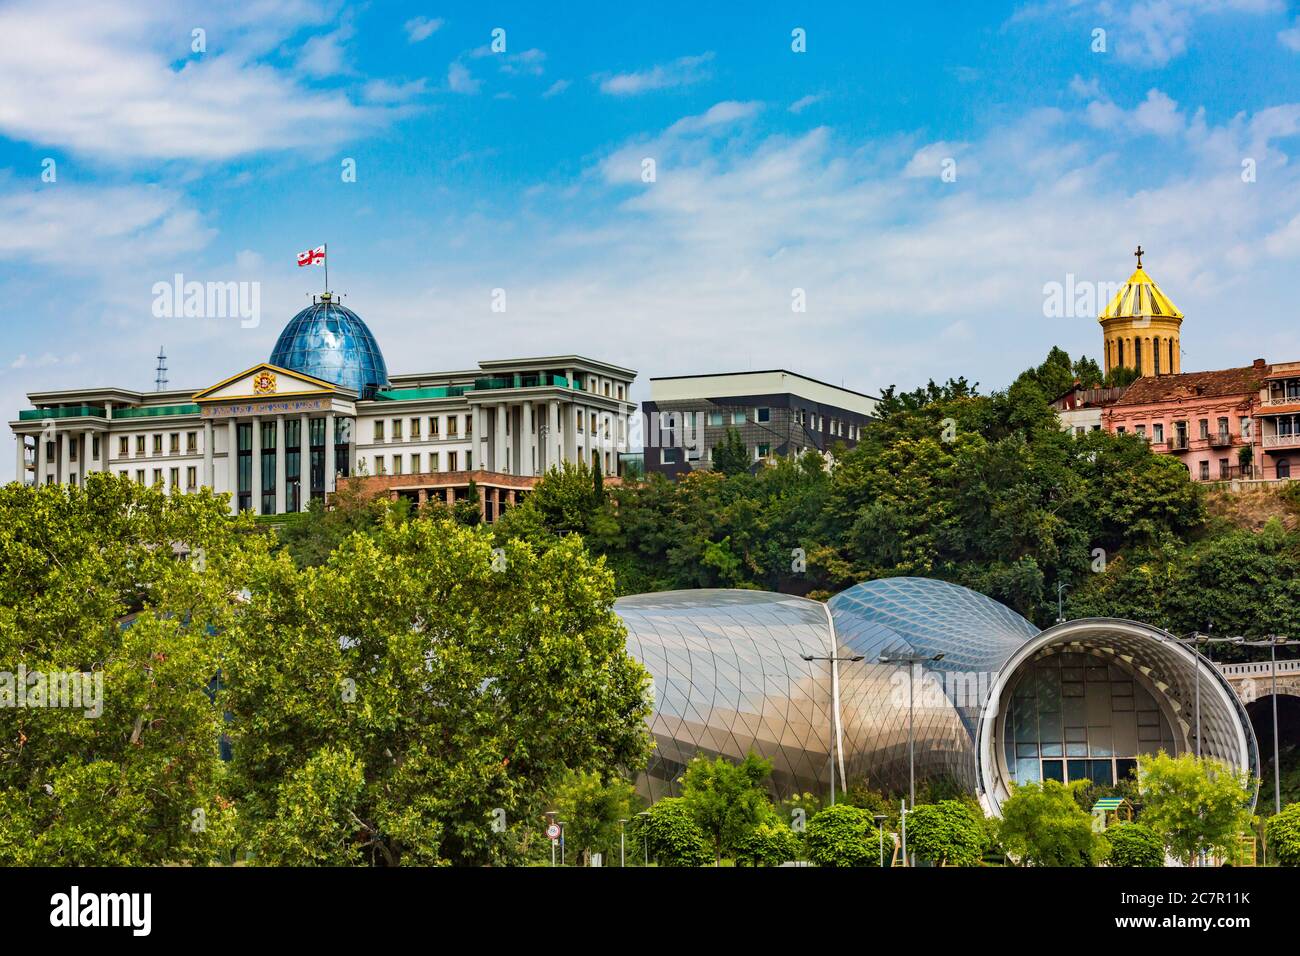 Präsidentenpalast abd die Rike Konzerthalle Wahrzeichen von Tiflis Georgien Hauptstadt Osteuropa Stockfoto